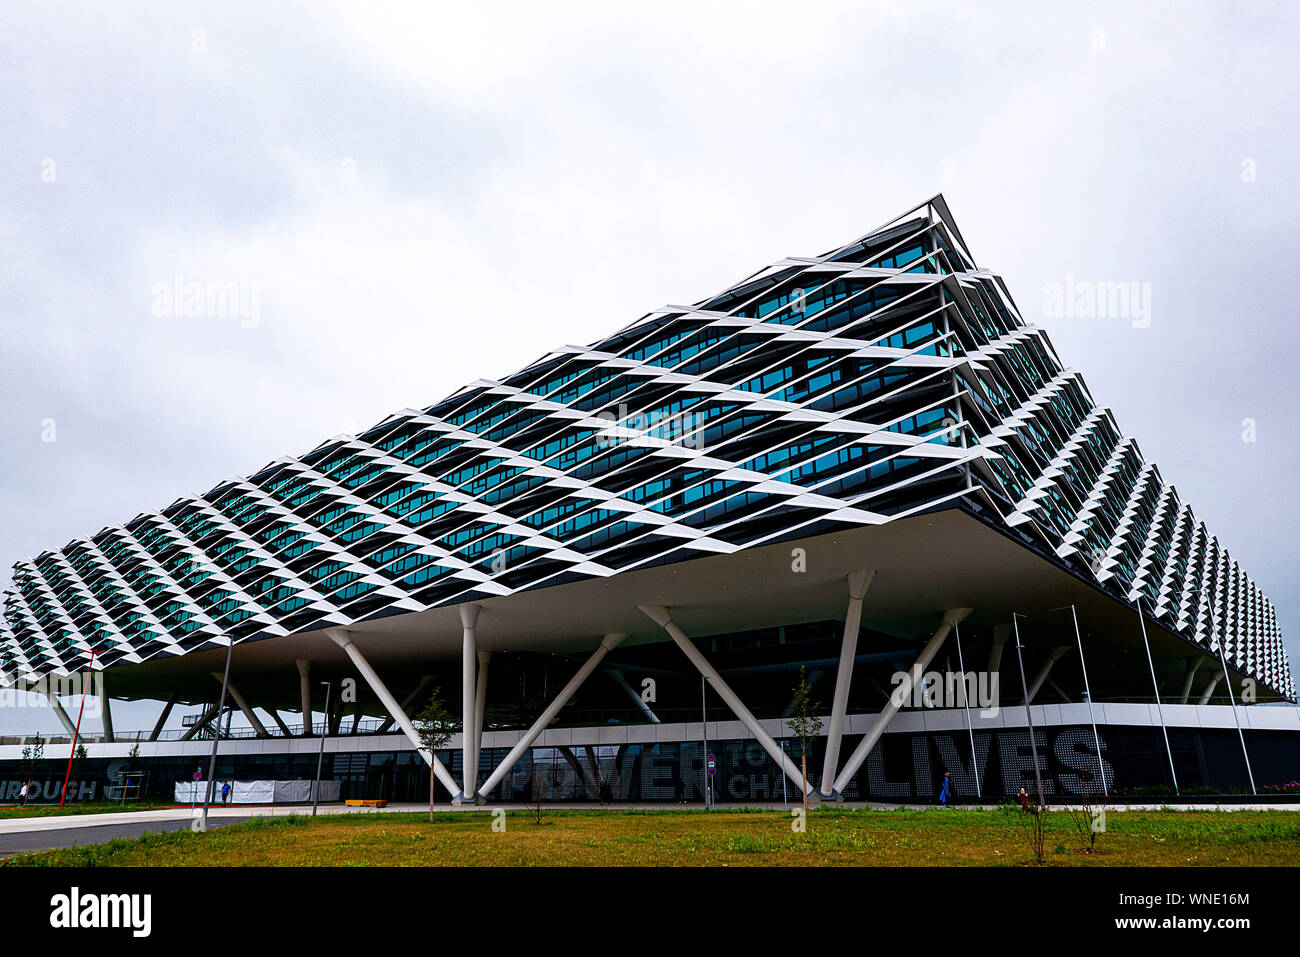 Herzogenaurach, Alemania. El 29 de julio, 2019. Adidas Arena, adidas AG edificio administrativo con reminiscencias un estadio de estadio de fútbol, tiene tamaño 52.000 metros cuadrados y tiene